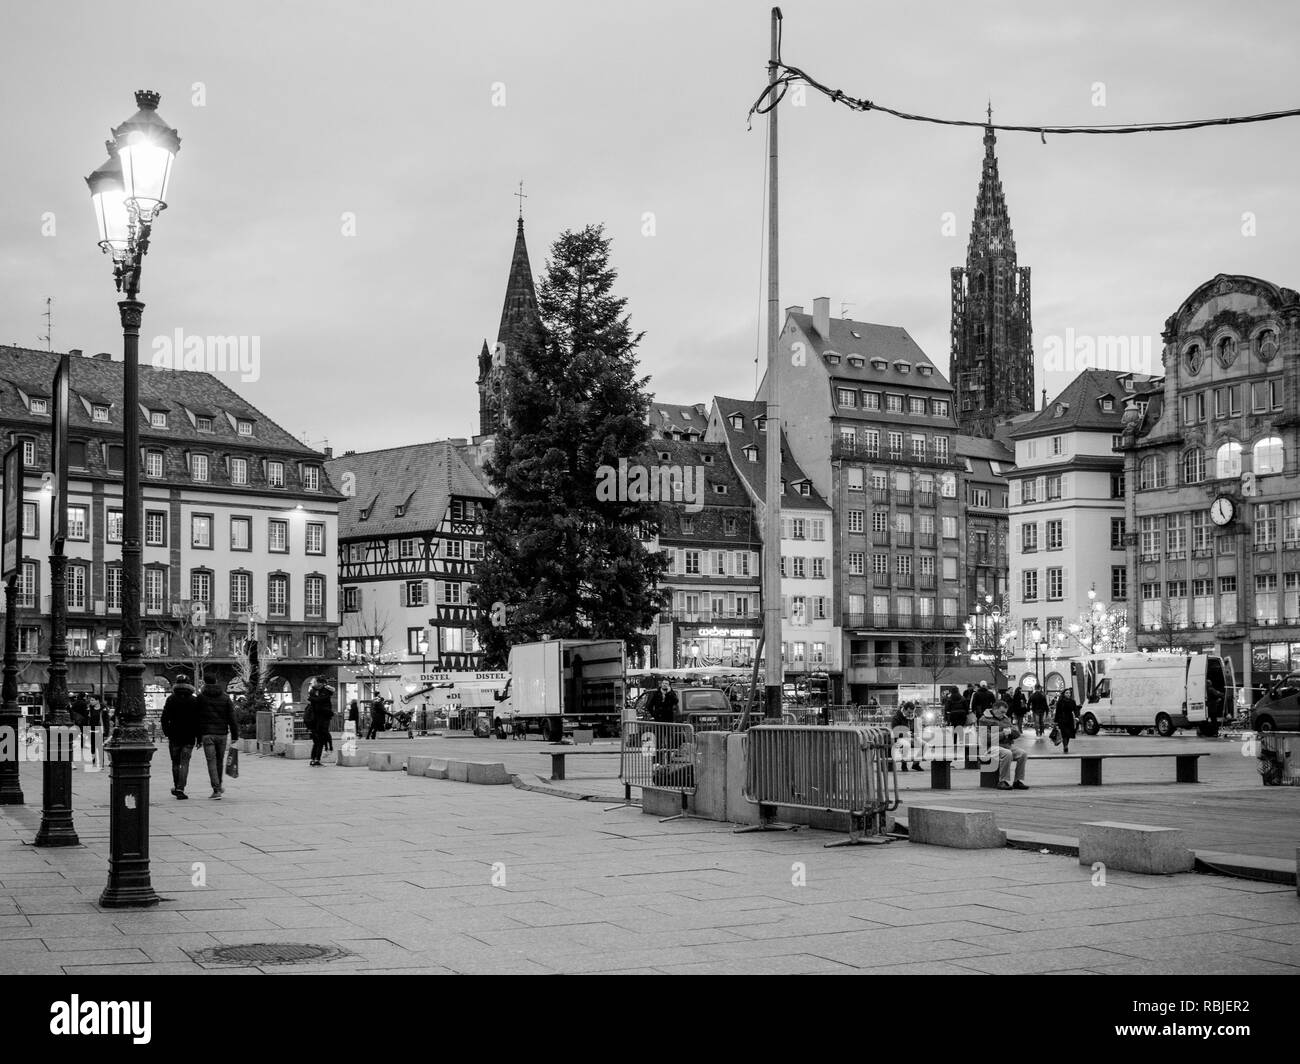 Strasburgo, Francia - 11 GEN 2018: Posto occupato generale Kleber piazza centrale a Strasburgo al crepuscolo con pedoni camminando e ammirando il più alto albero di Natale in Europa Foto Stock